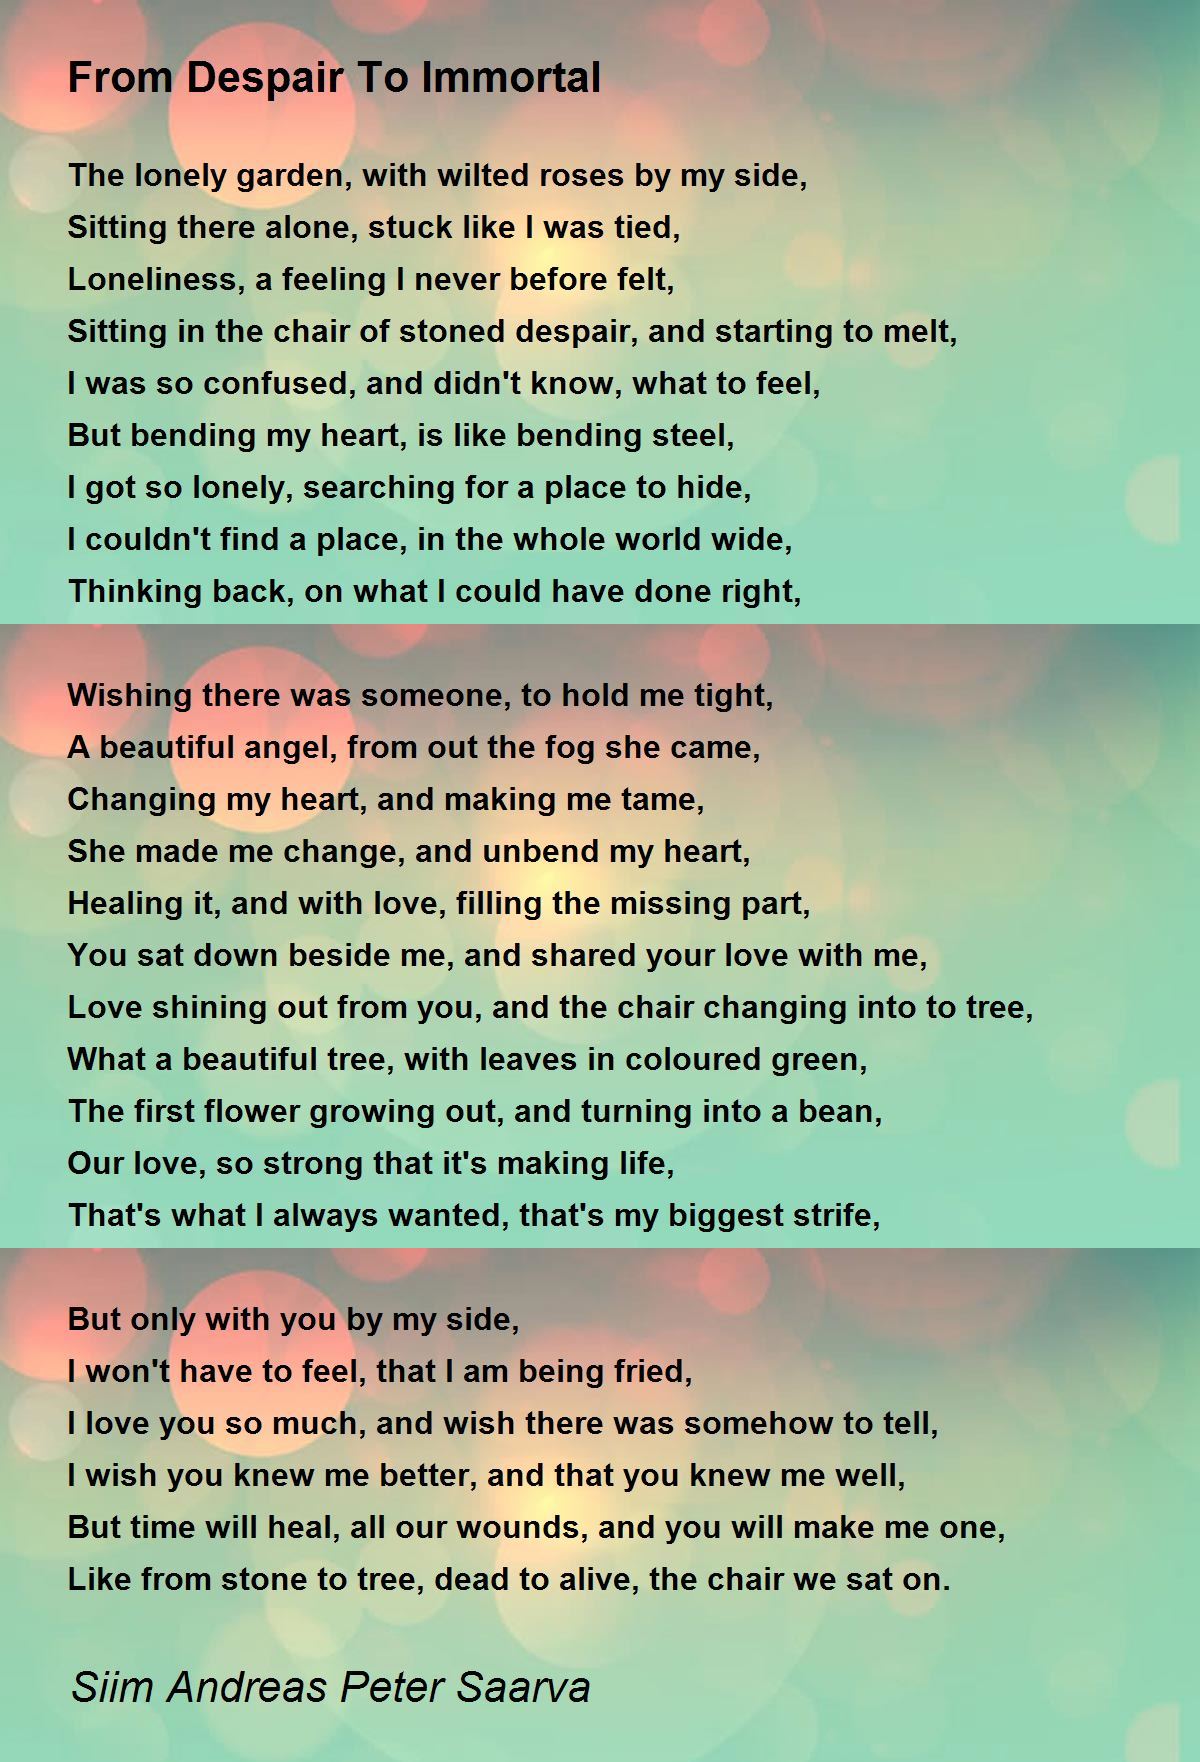 Singing My Tone - Singing My Tone Poem by Siim Andreas Peter Saarva